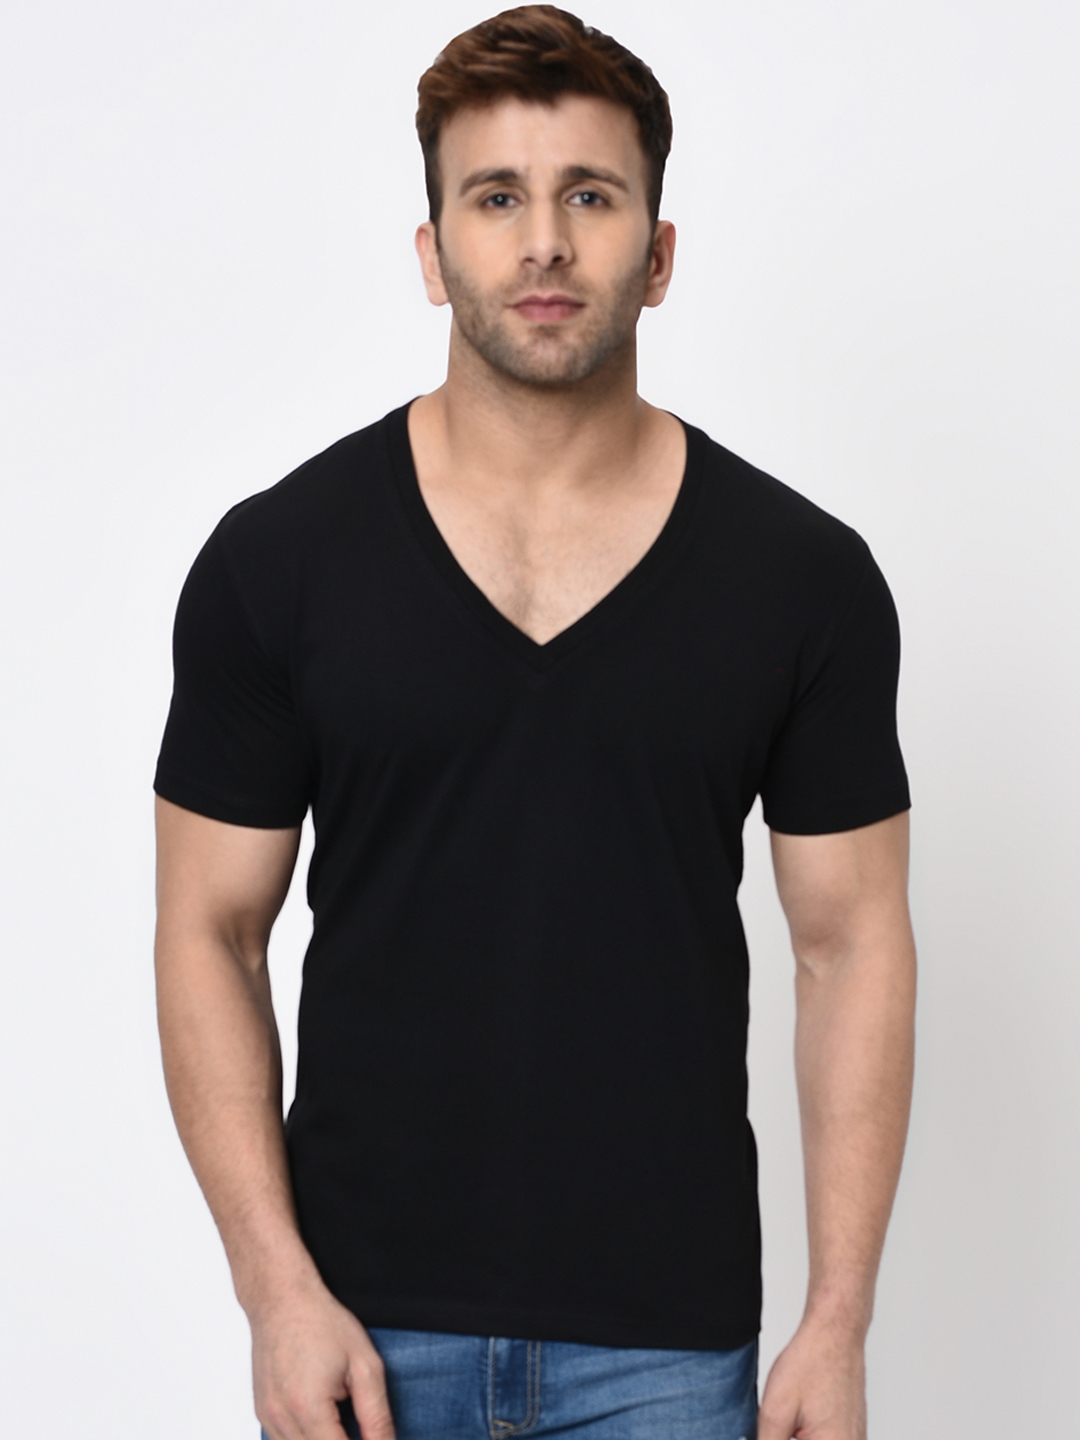 Buy WILD WEST Men Black Solid V Neck T Shirt - Tshirts for Men ...